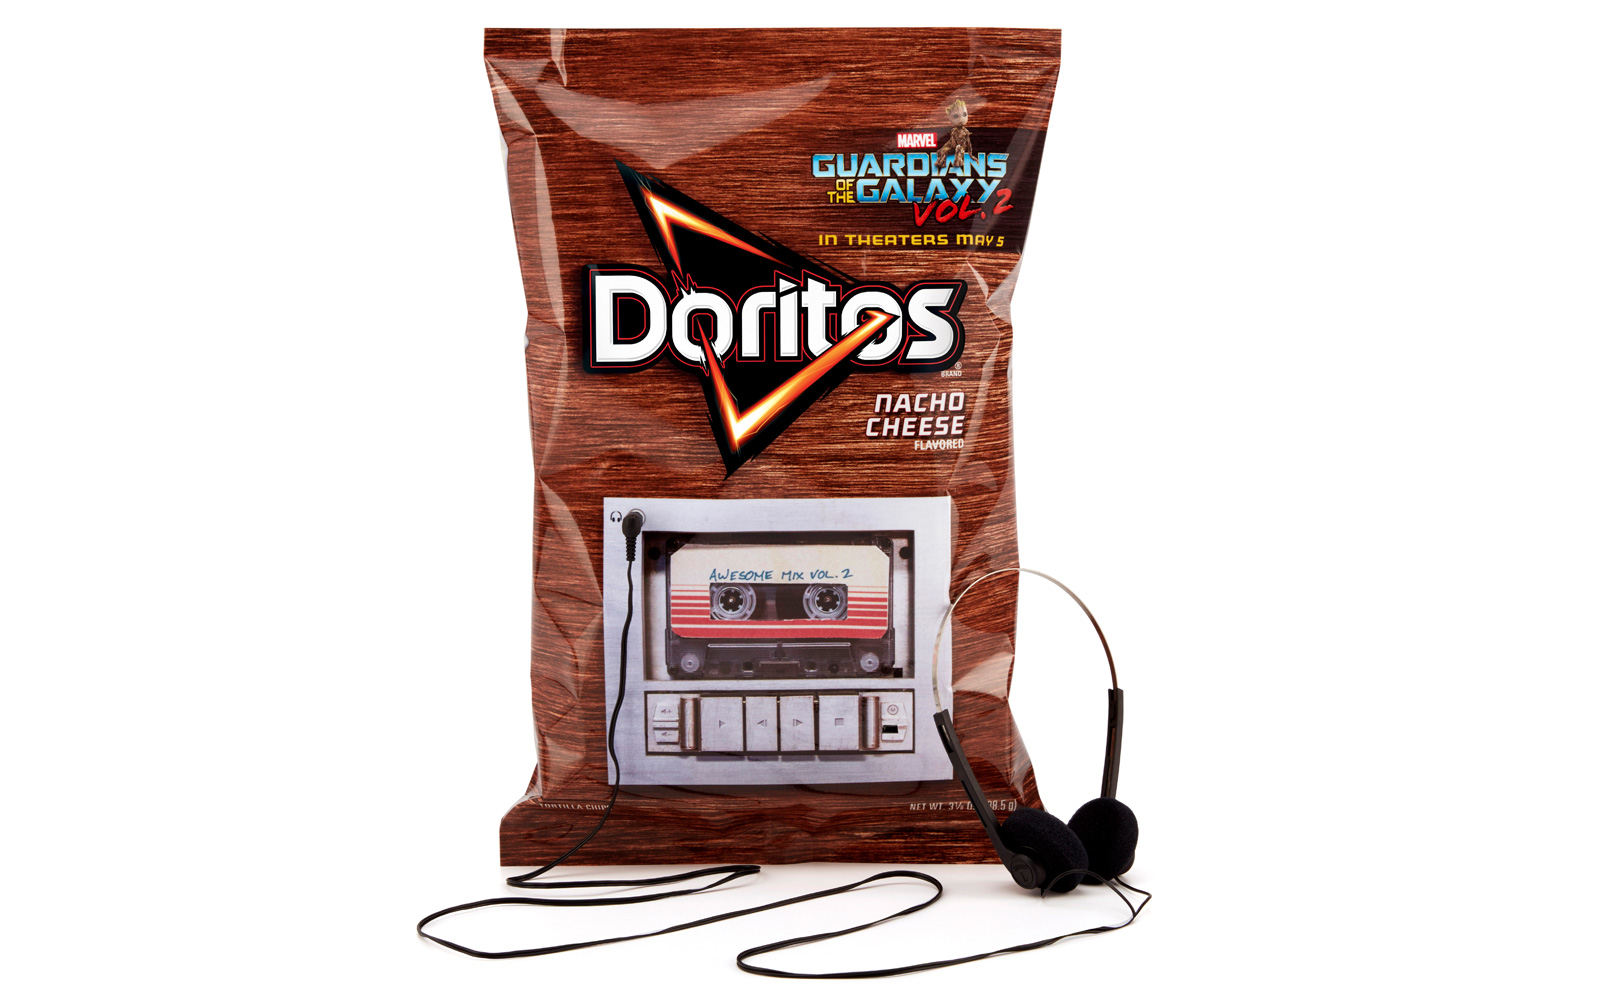 ซองขนม Doritos รุ่นพิเศษ ฟังซาวด์แทร็ก Guardian of Galaxy 2 จากในซองได้ด้วย